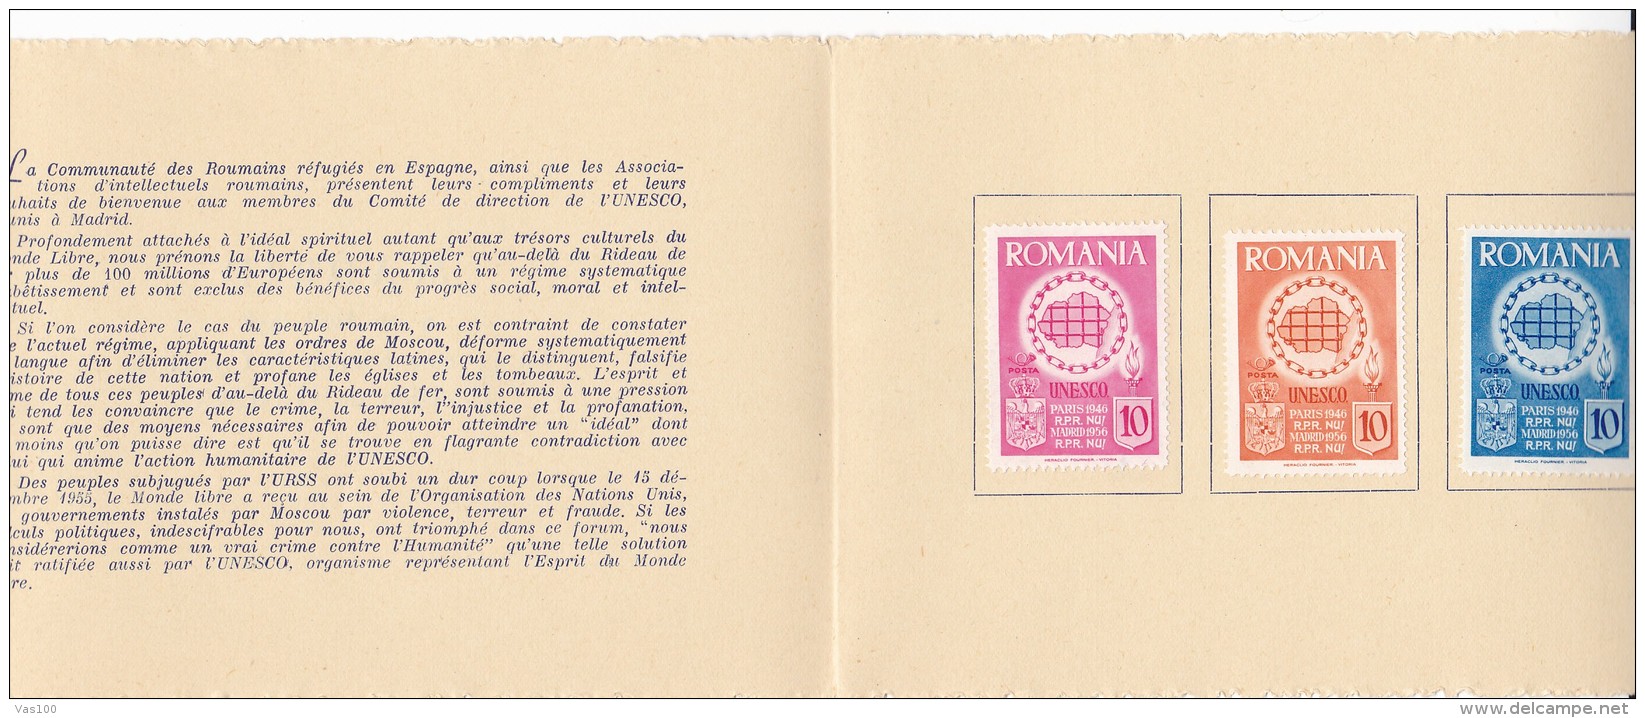 #T100    REUNION OF UNESCO COUNCIL, MADRID,    BOOKLETS,   1956   , SPAIN EXIL, ROMANIA. - Markenheftchen